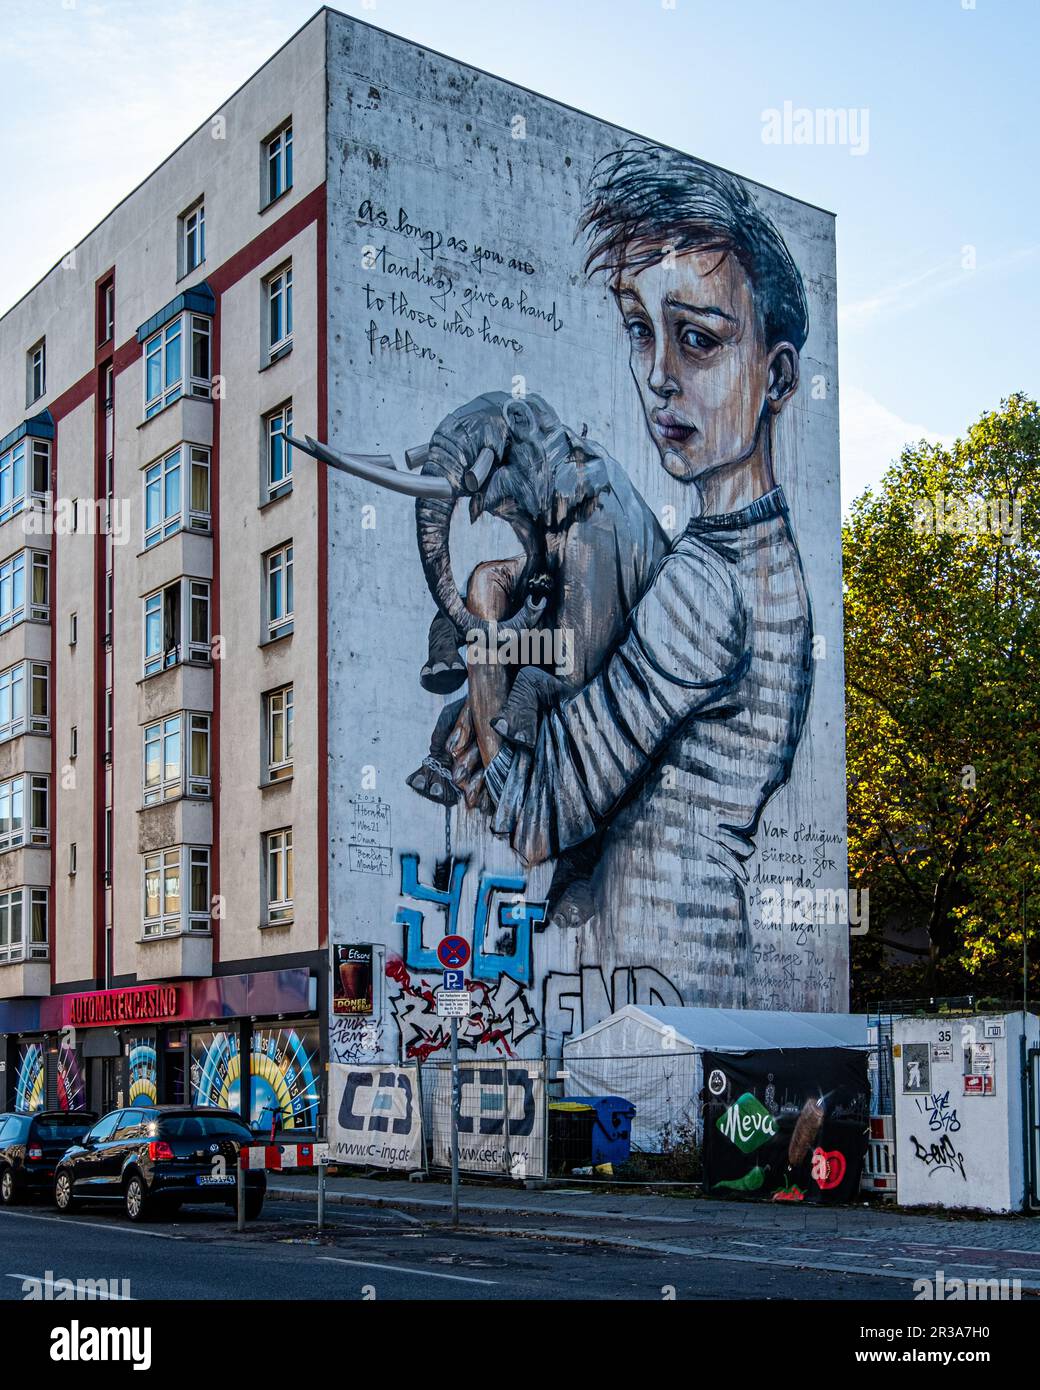 Boy Holding Elephant, Urban Art on Building Firewall, Moabit-Mitte, Berlin, Deutschland. Solange du stehst, hilf denen, die gefallen sind Stockfoto